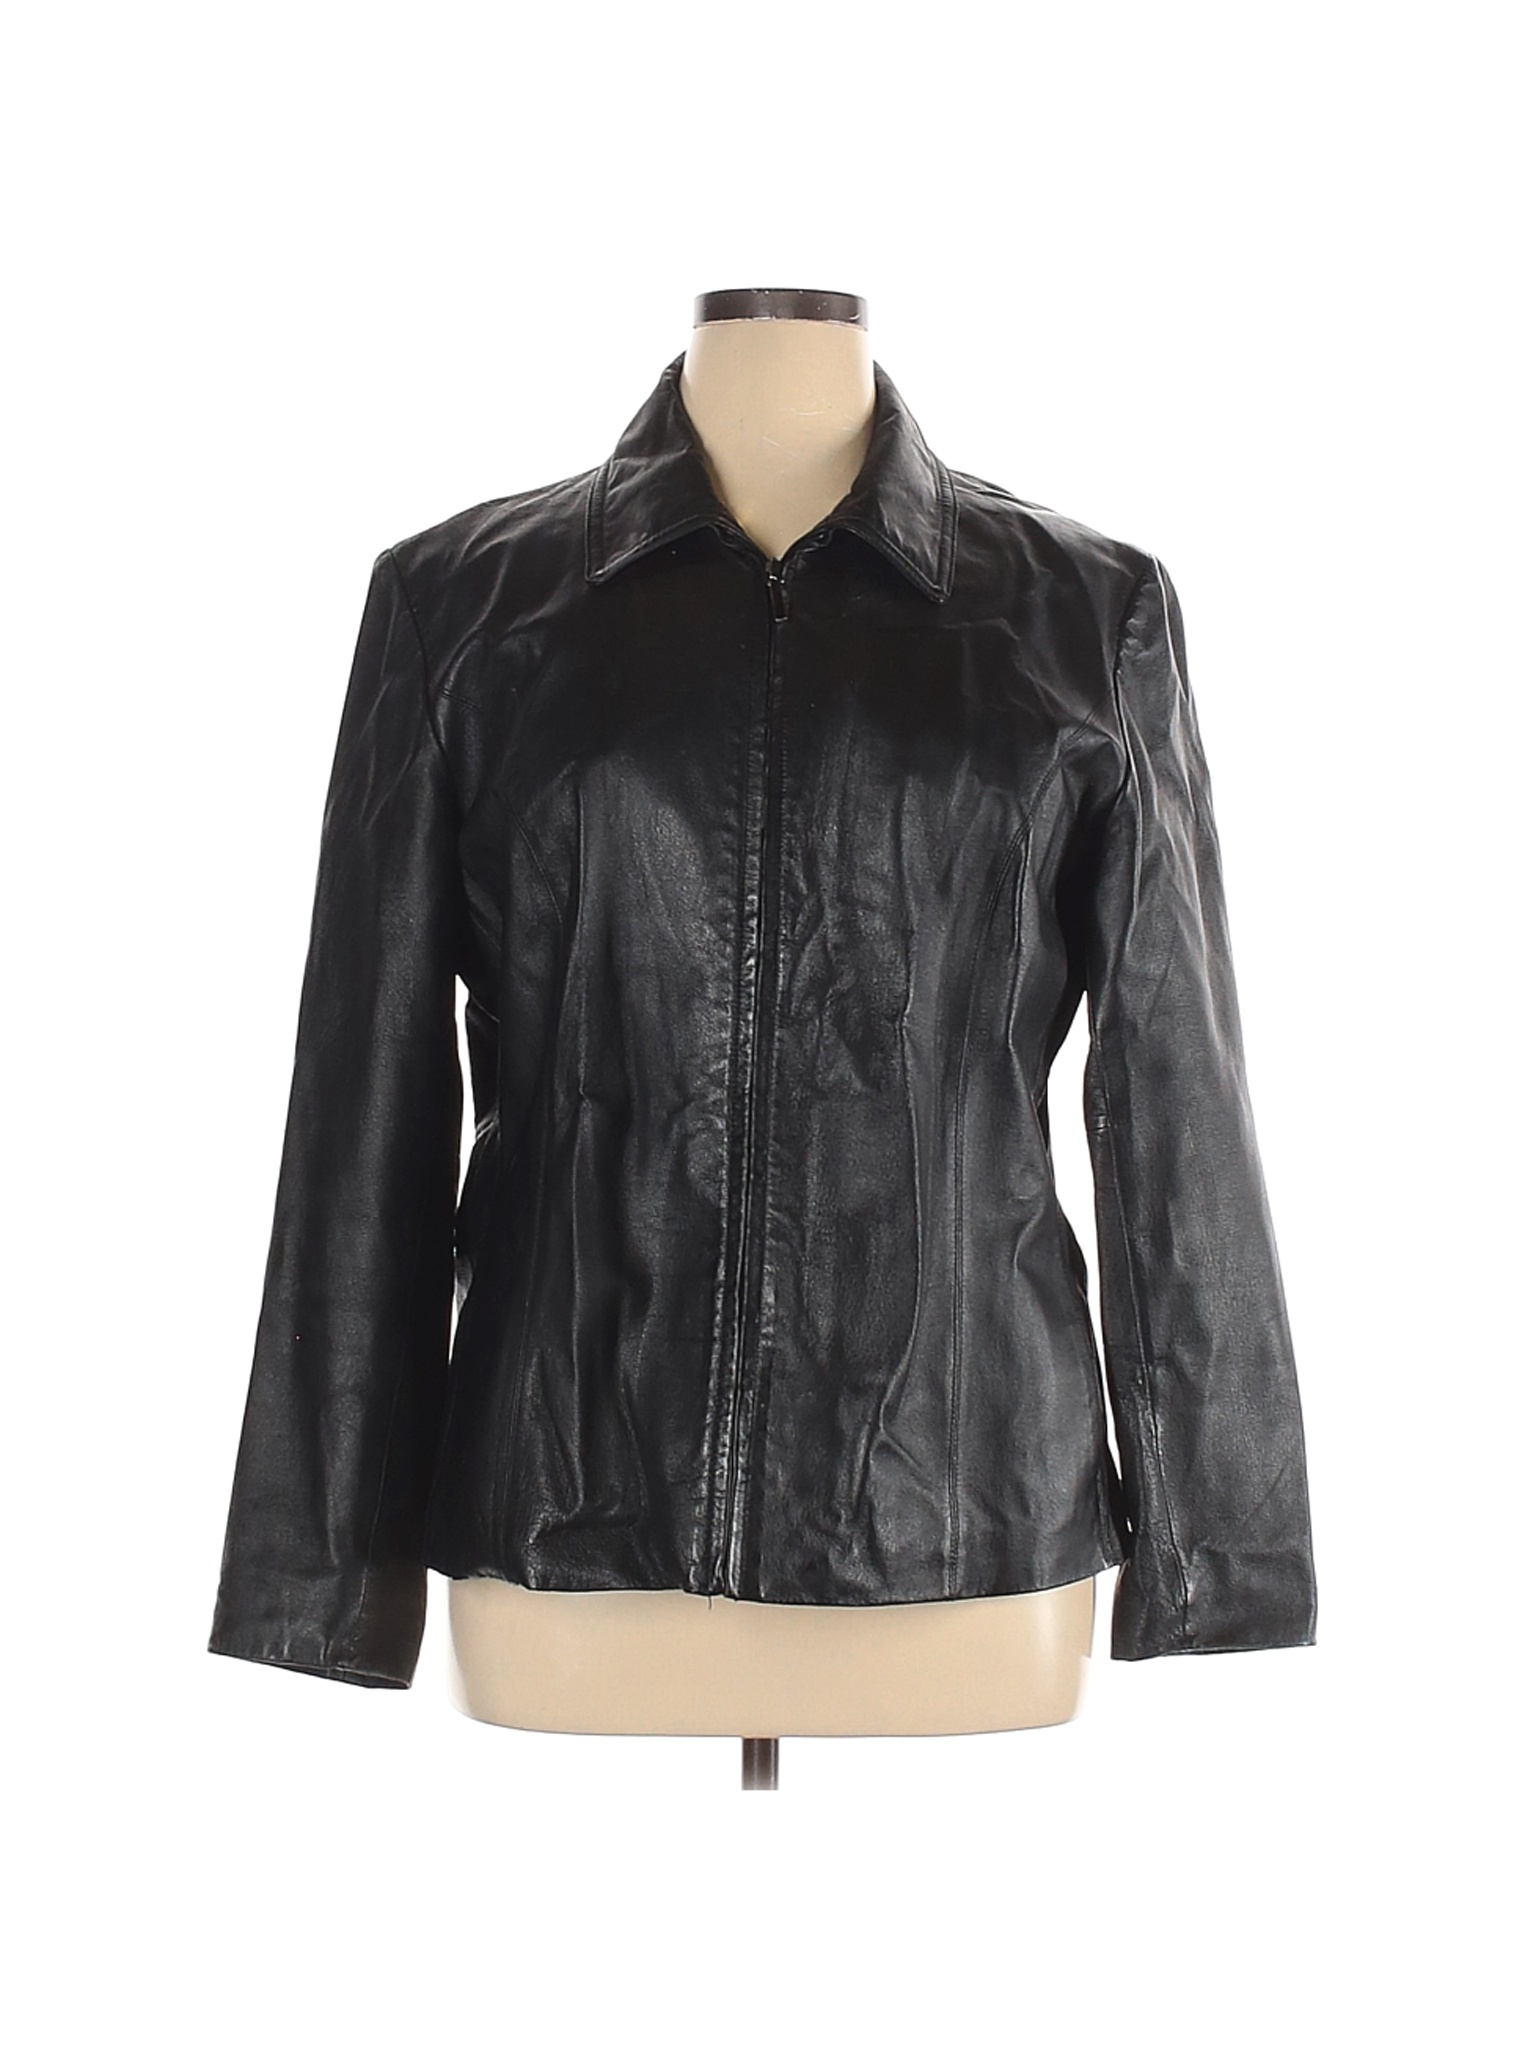 Worthington Women Black Leather Jacket XL | eBay